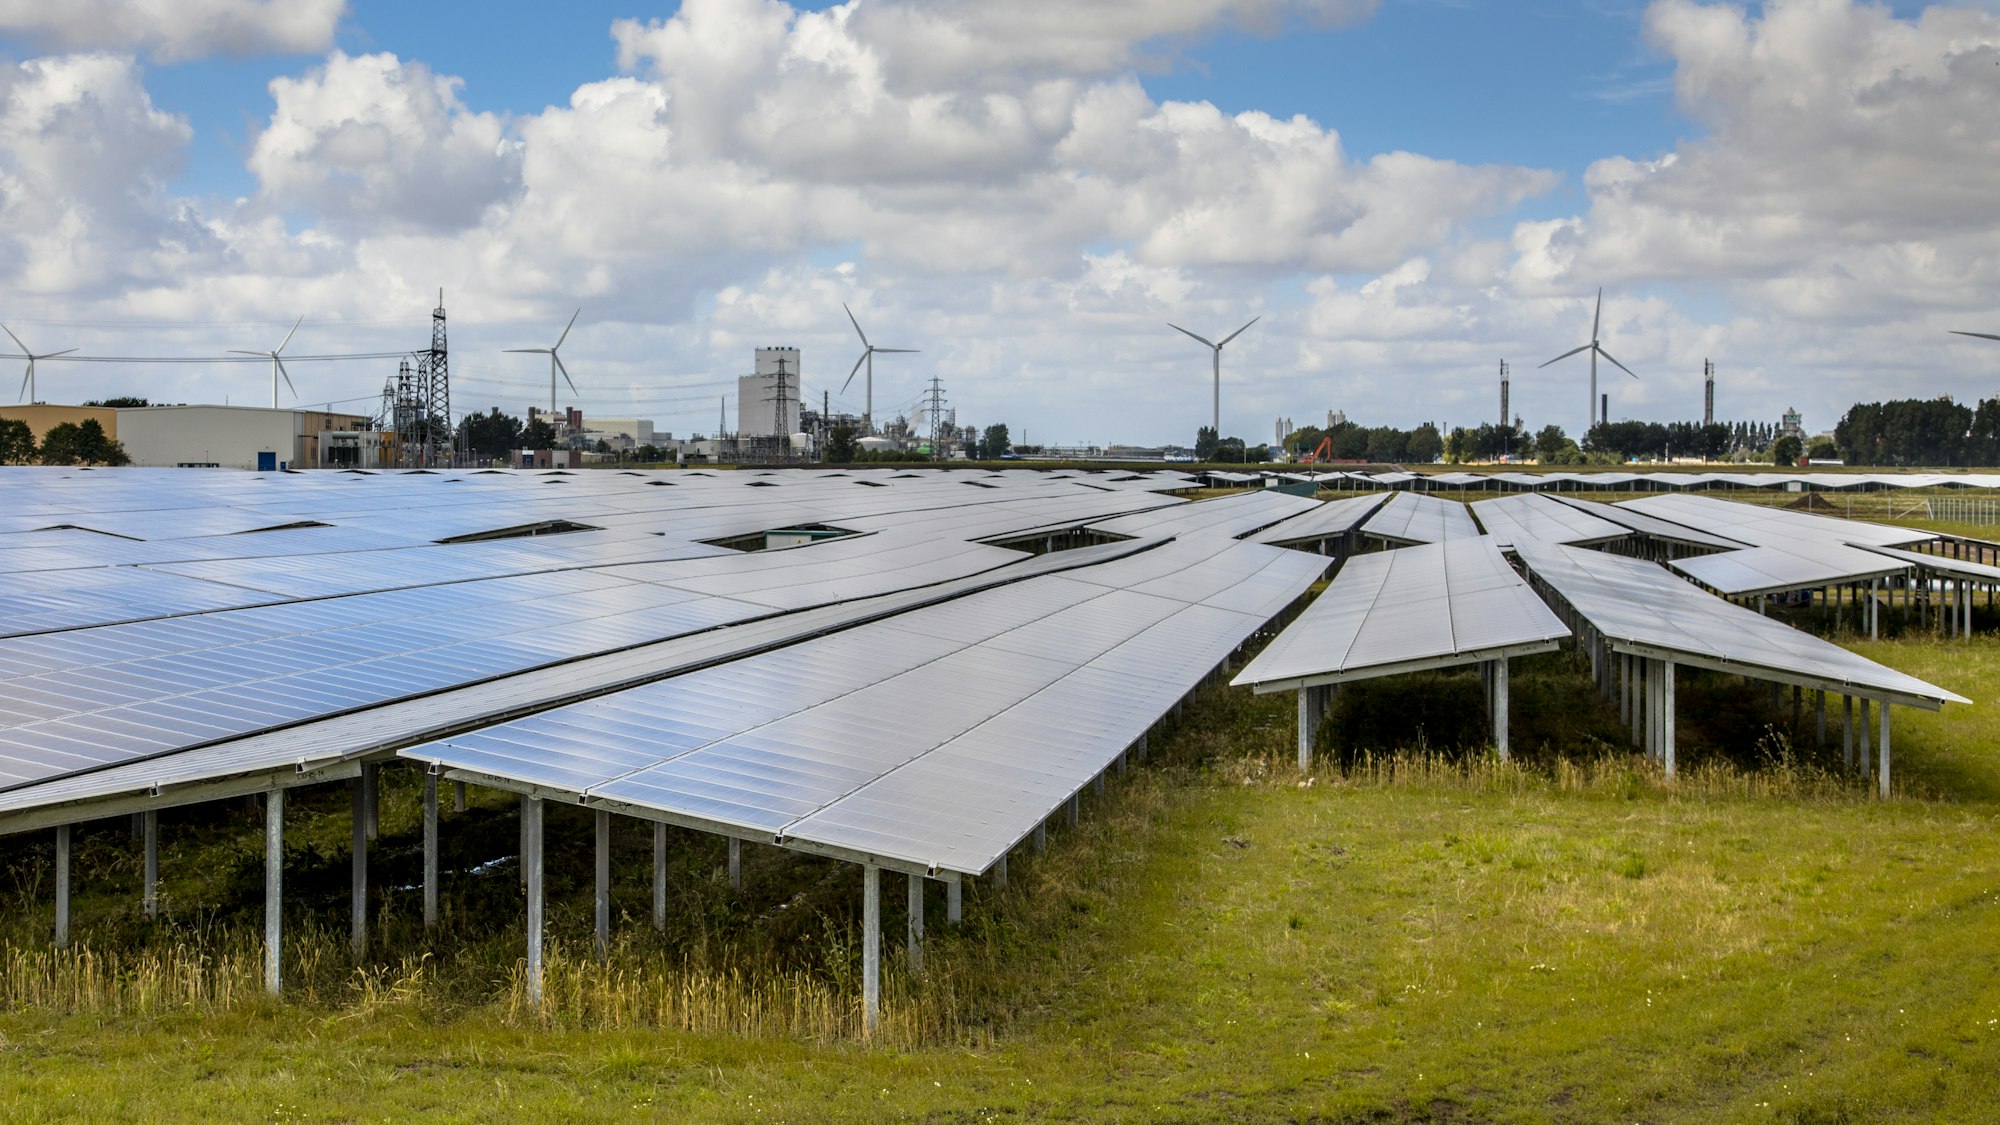 Solar panel field in industrial area